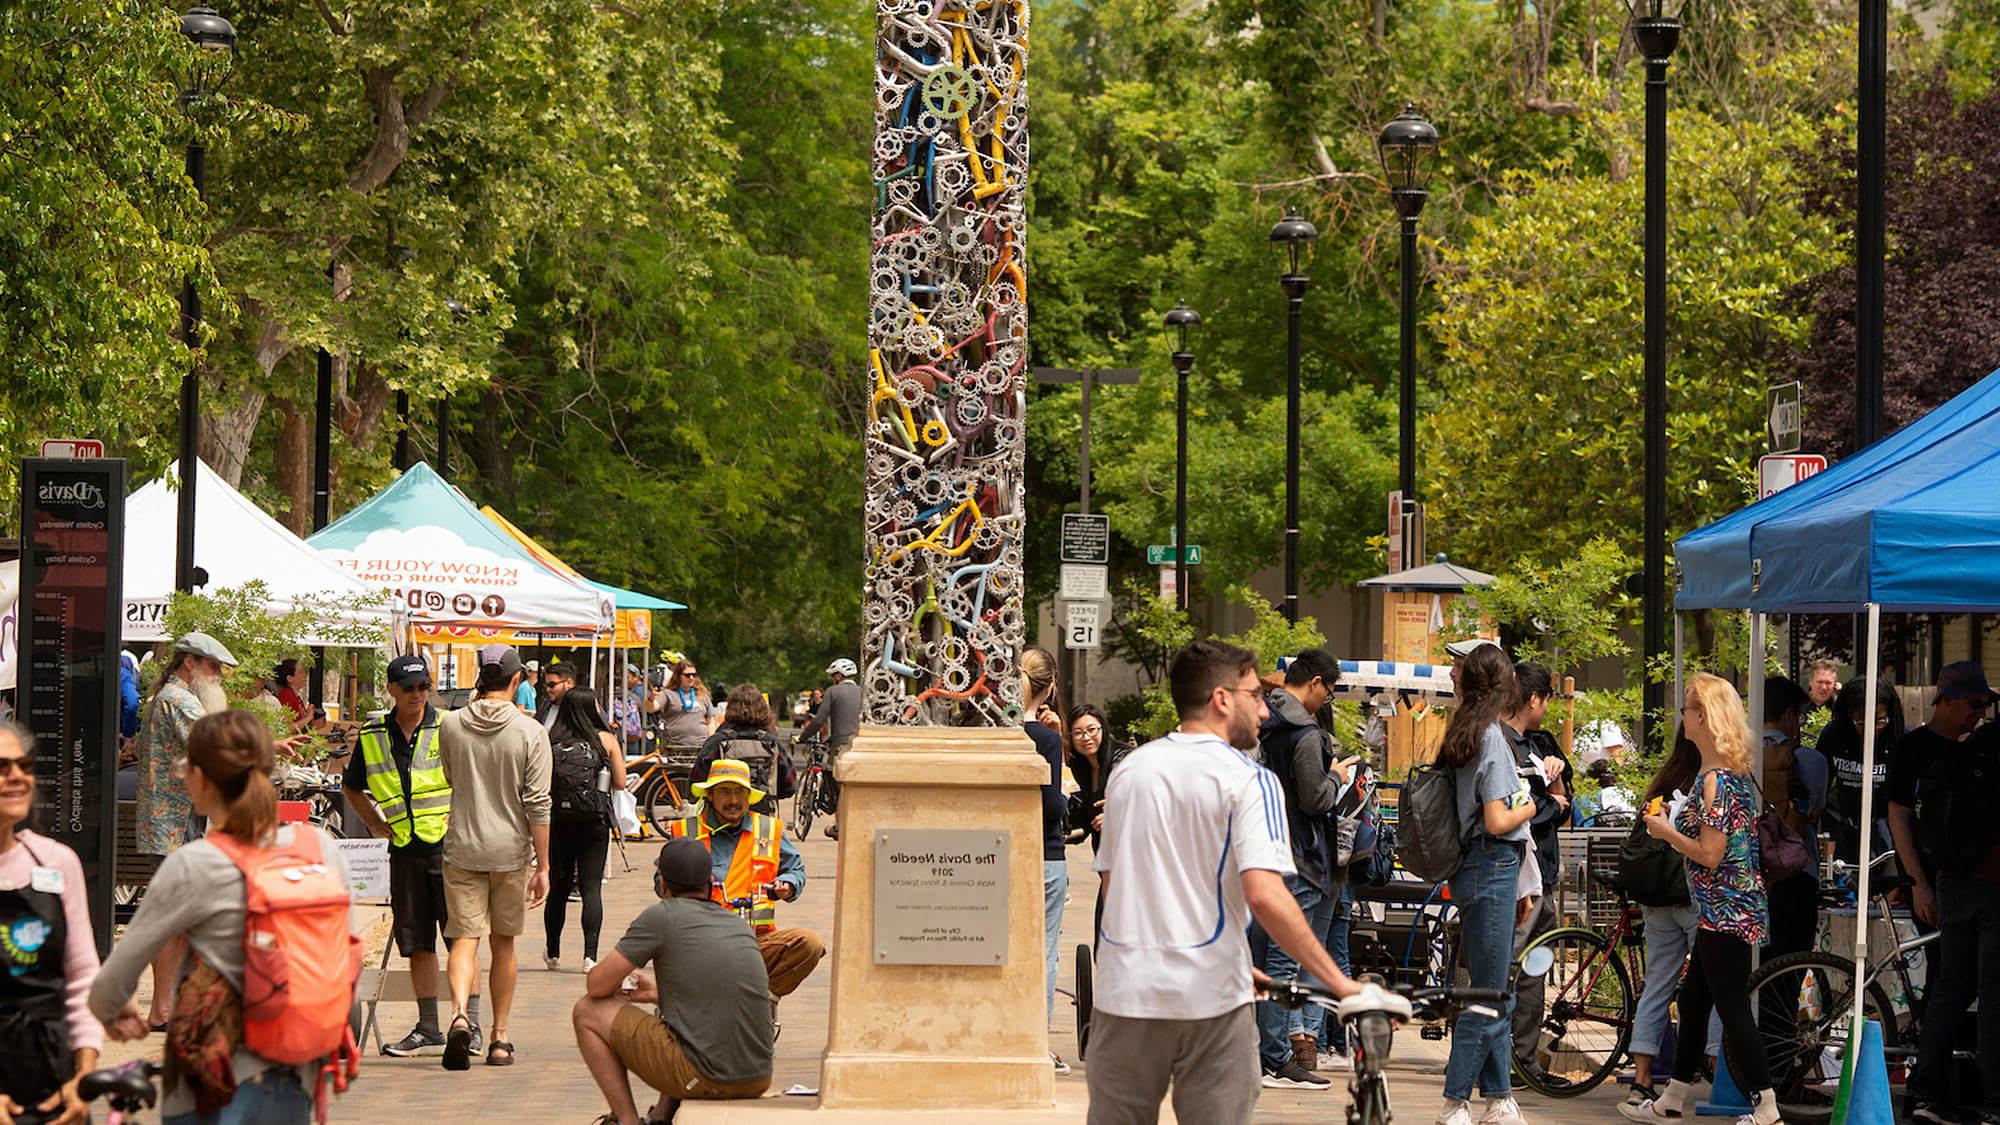 戴维斯市中心的景象, Ca, 满是学生, 当地人和一个独特的方尖碑形状的雕塑，由自行车零件制成